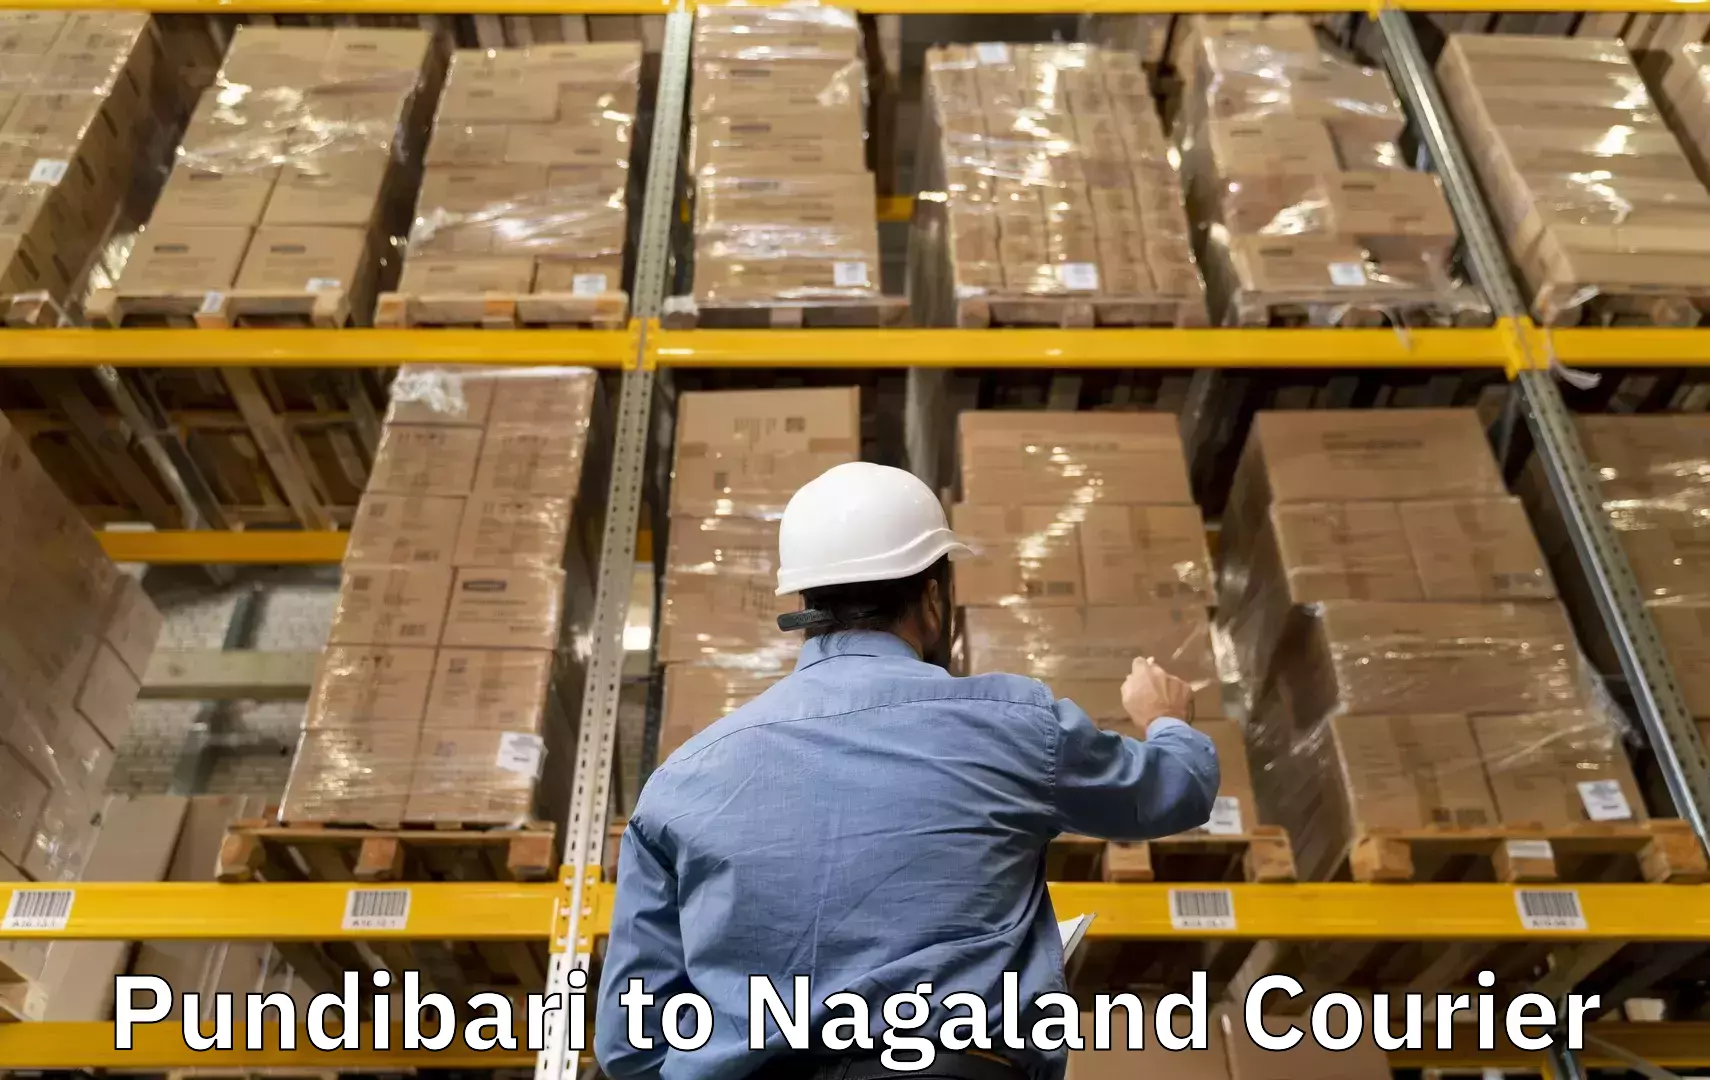 Baggage transport services Pundibari to Nagaland